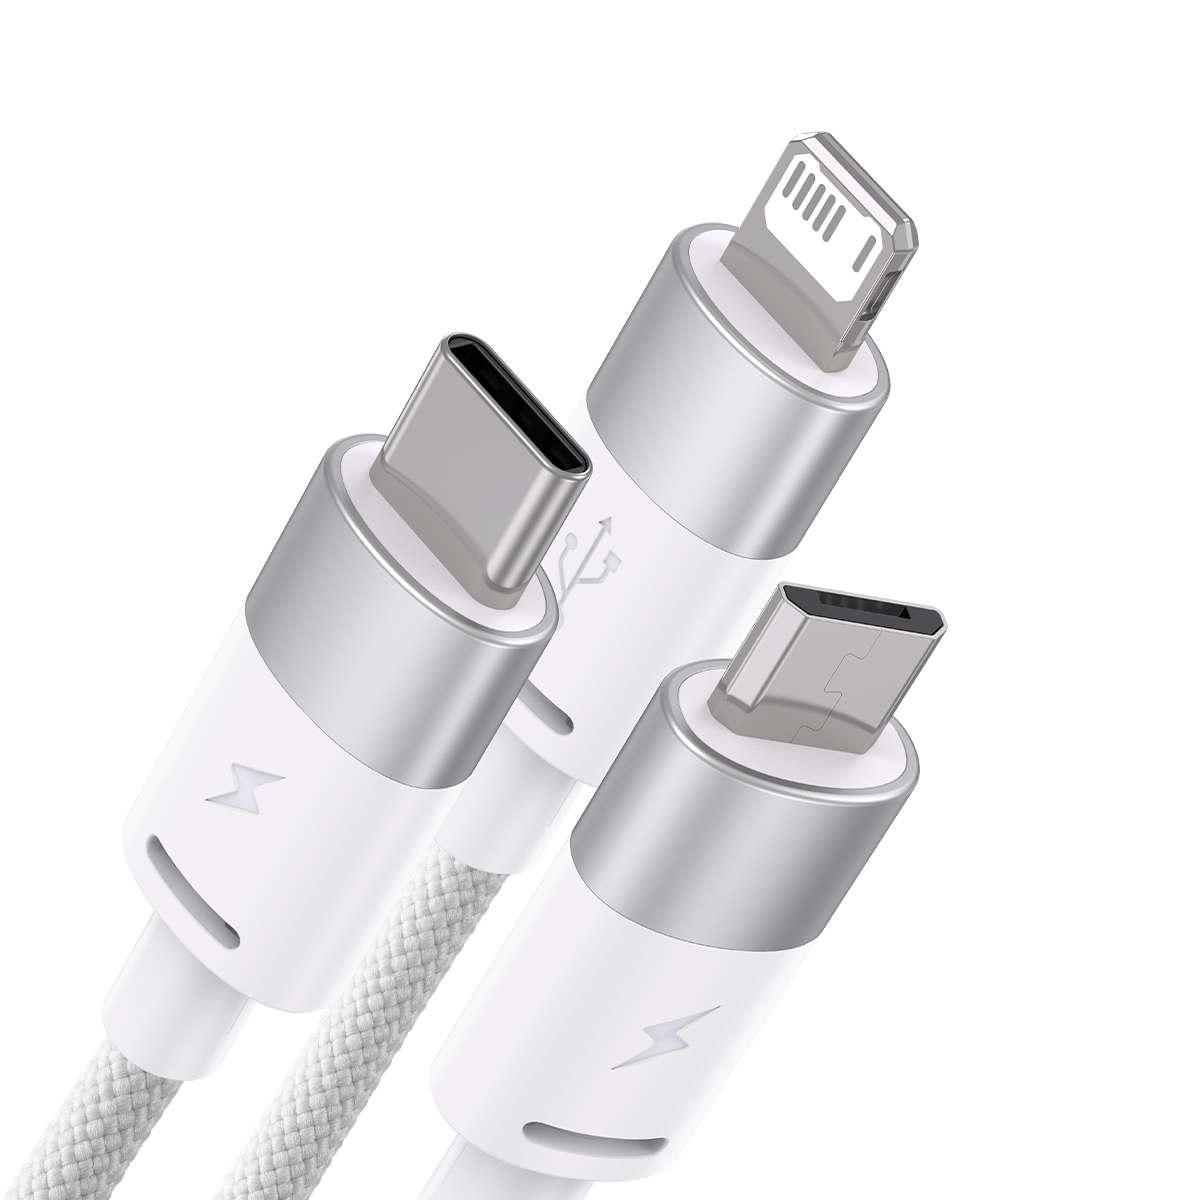 Cáp sạc 3 đầu Baseus StarSpeed 1 for 3 Fast Charging Data Cable USB to M+L+C 3.5A - Hàng chính hãng